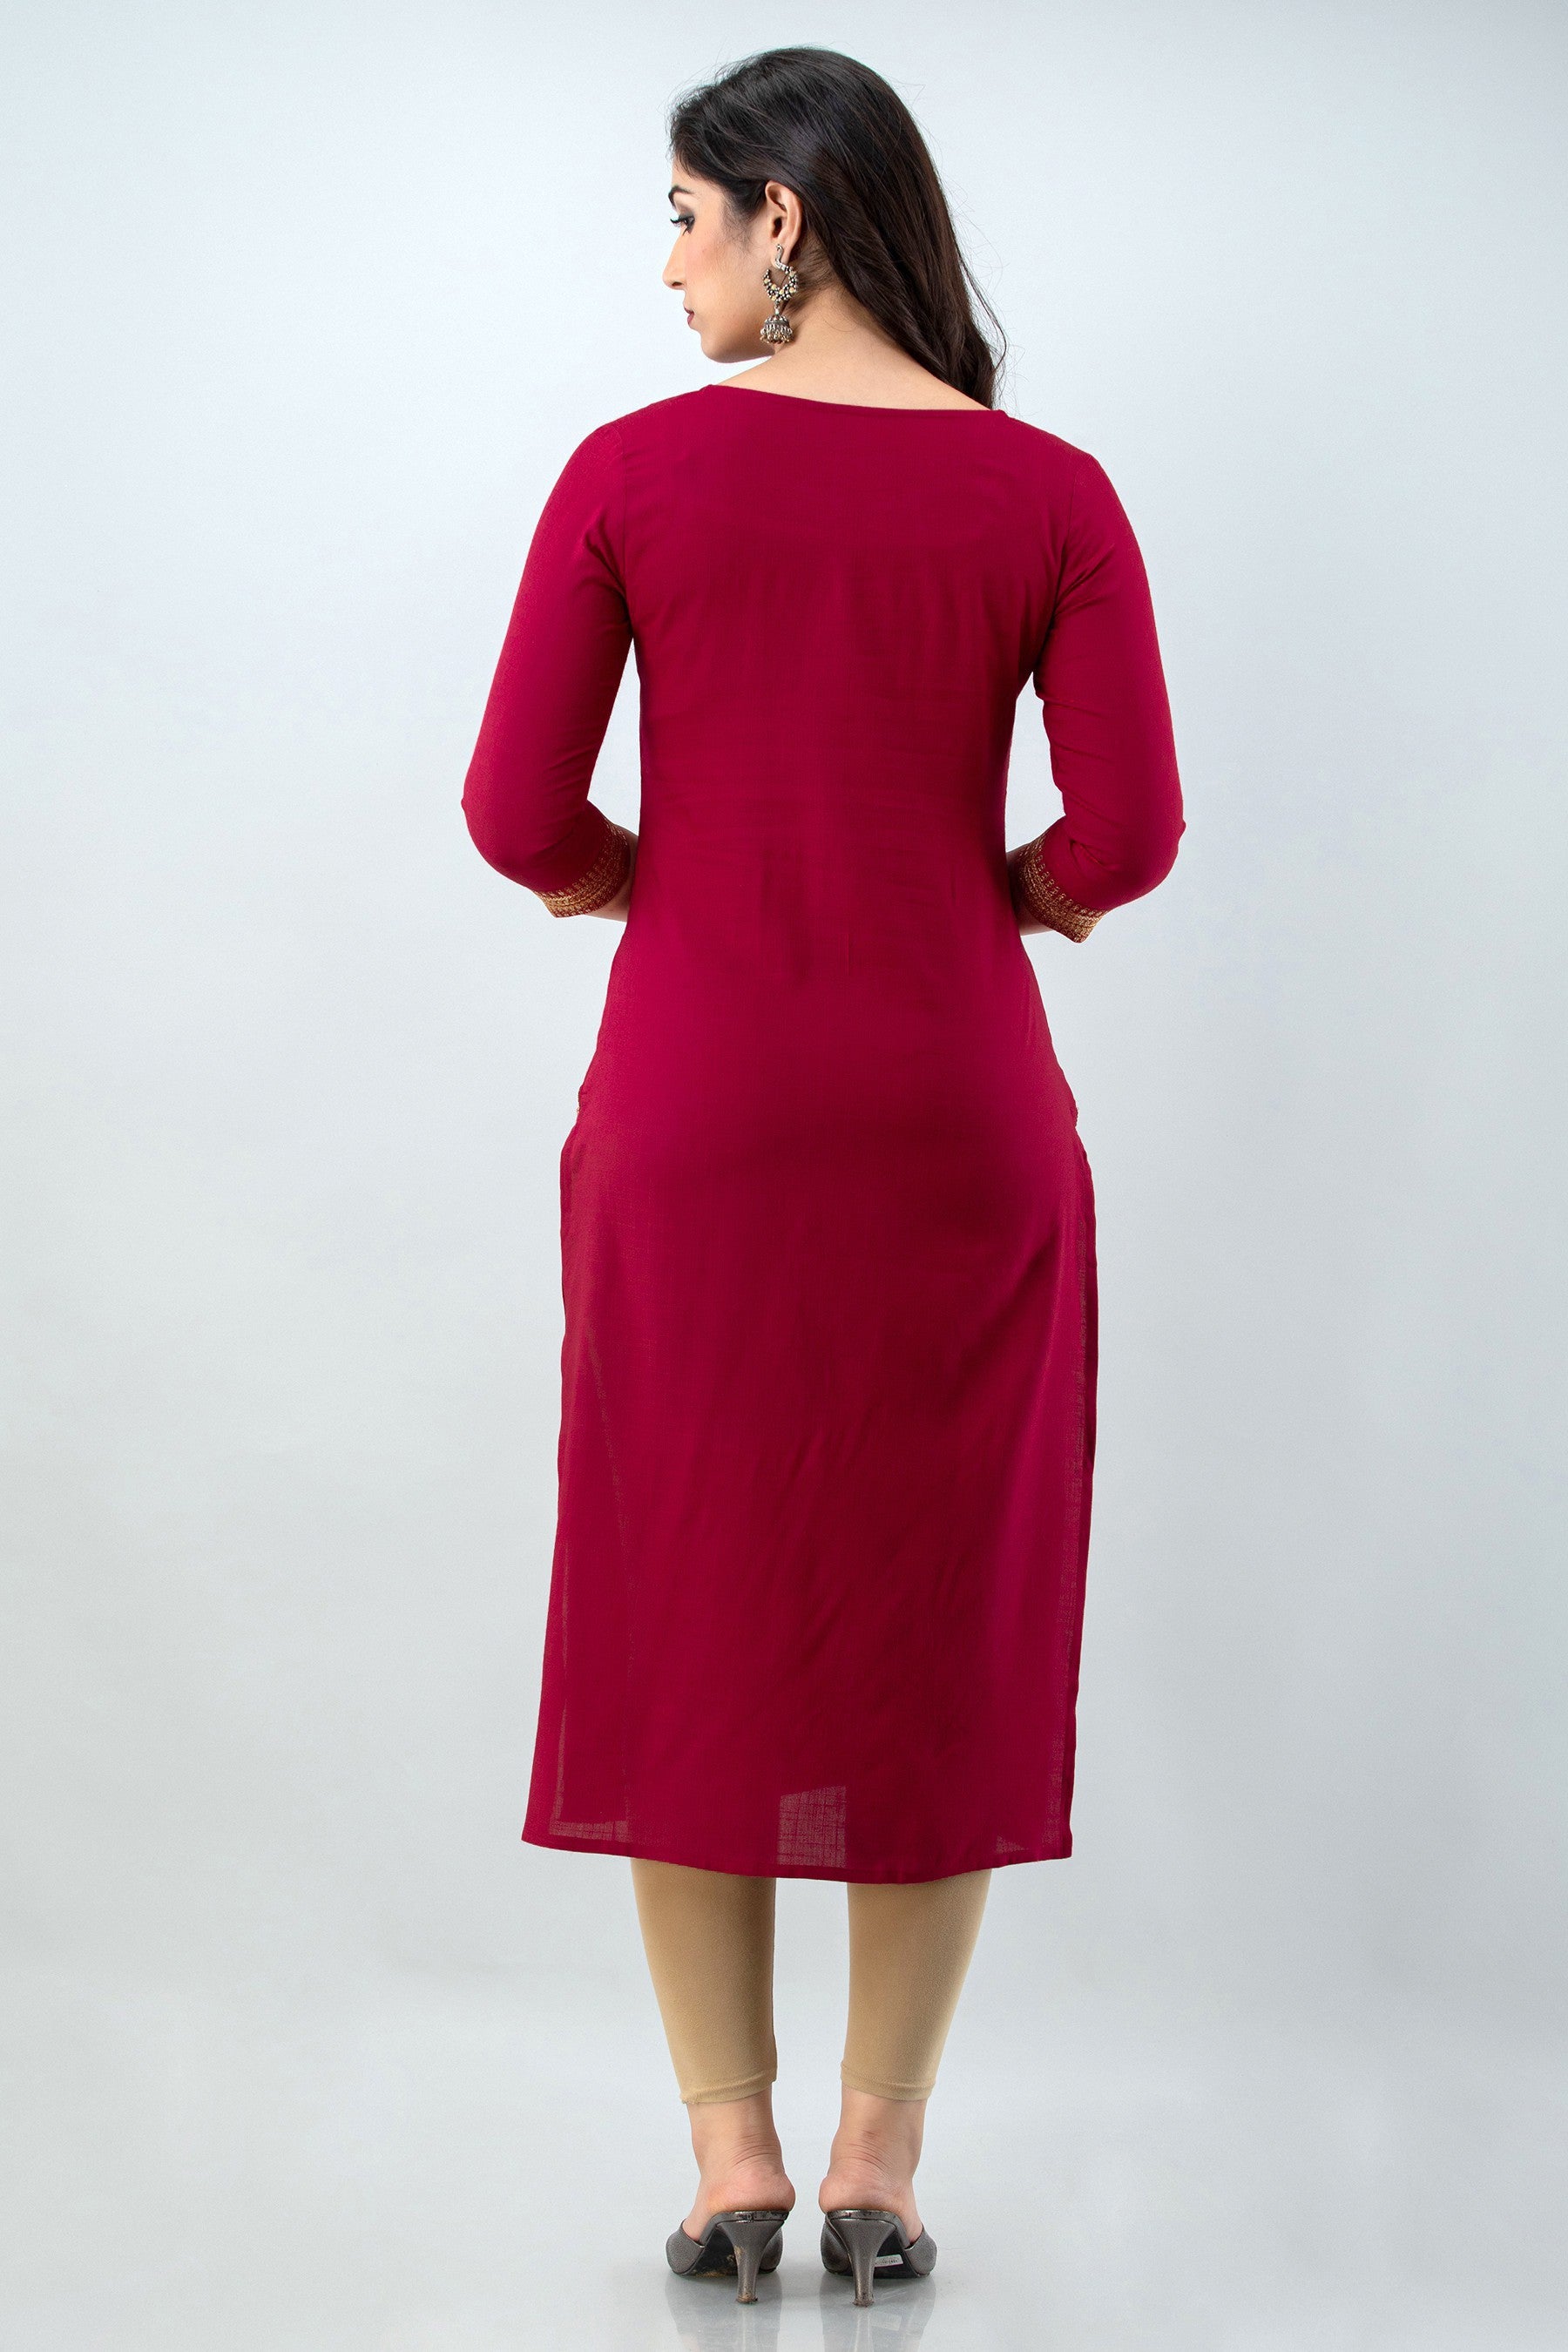 Women's Embellished Viscose Rayon Straight Kurta (Mineral Red) - Charu